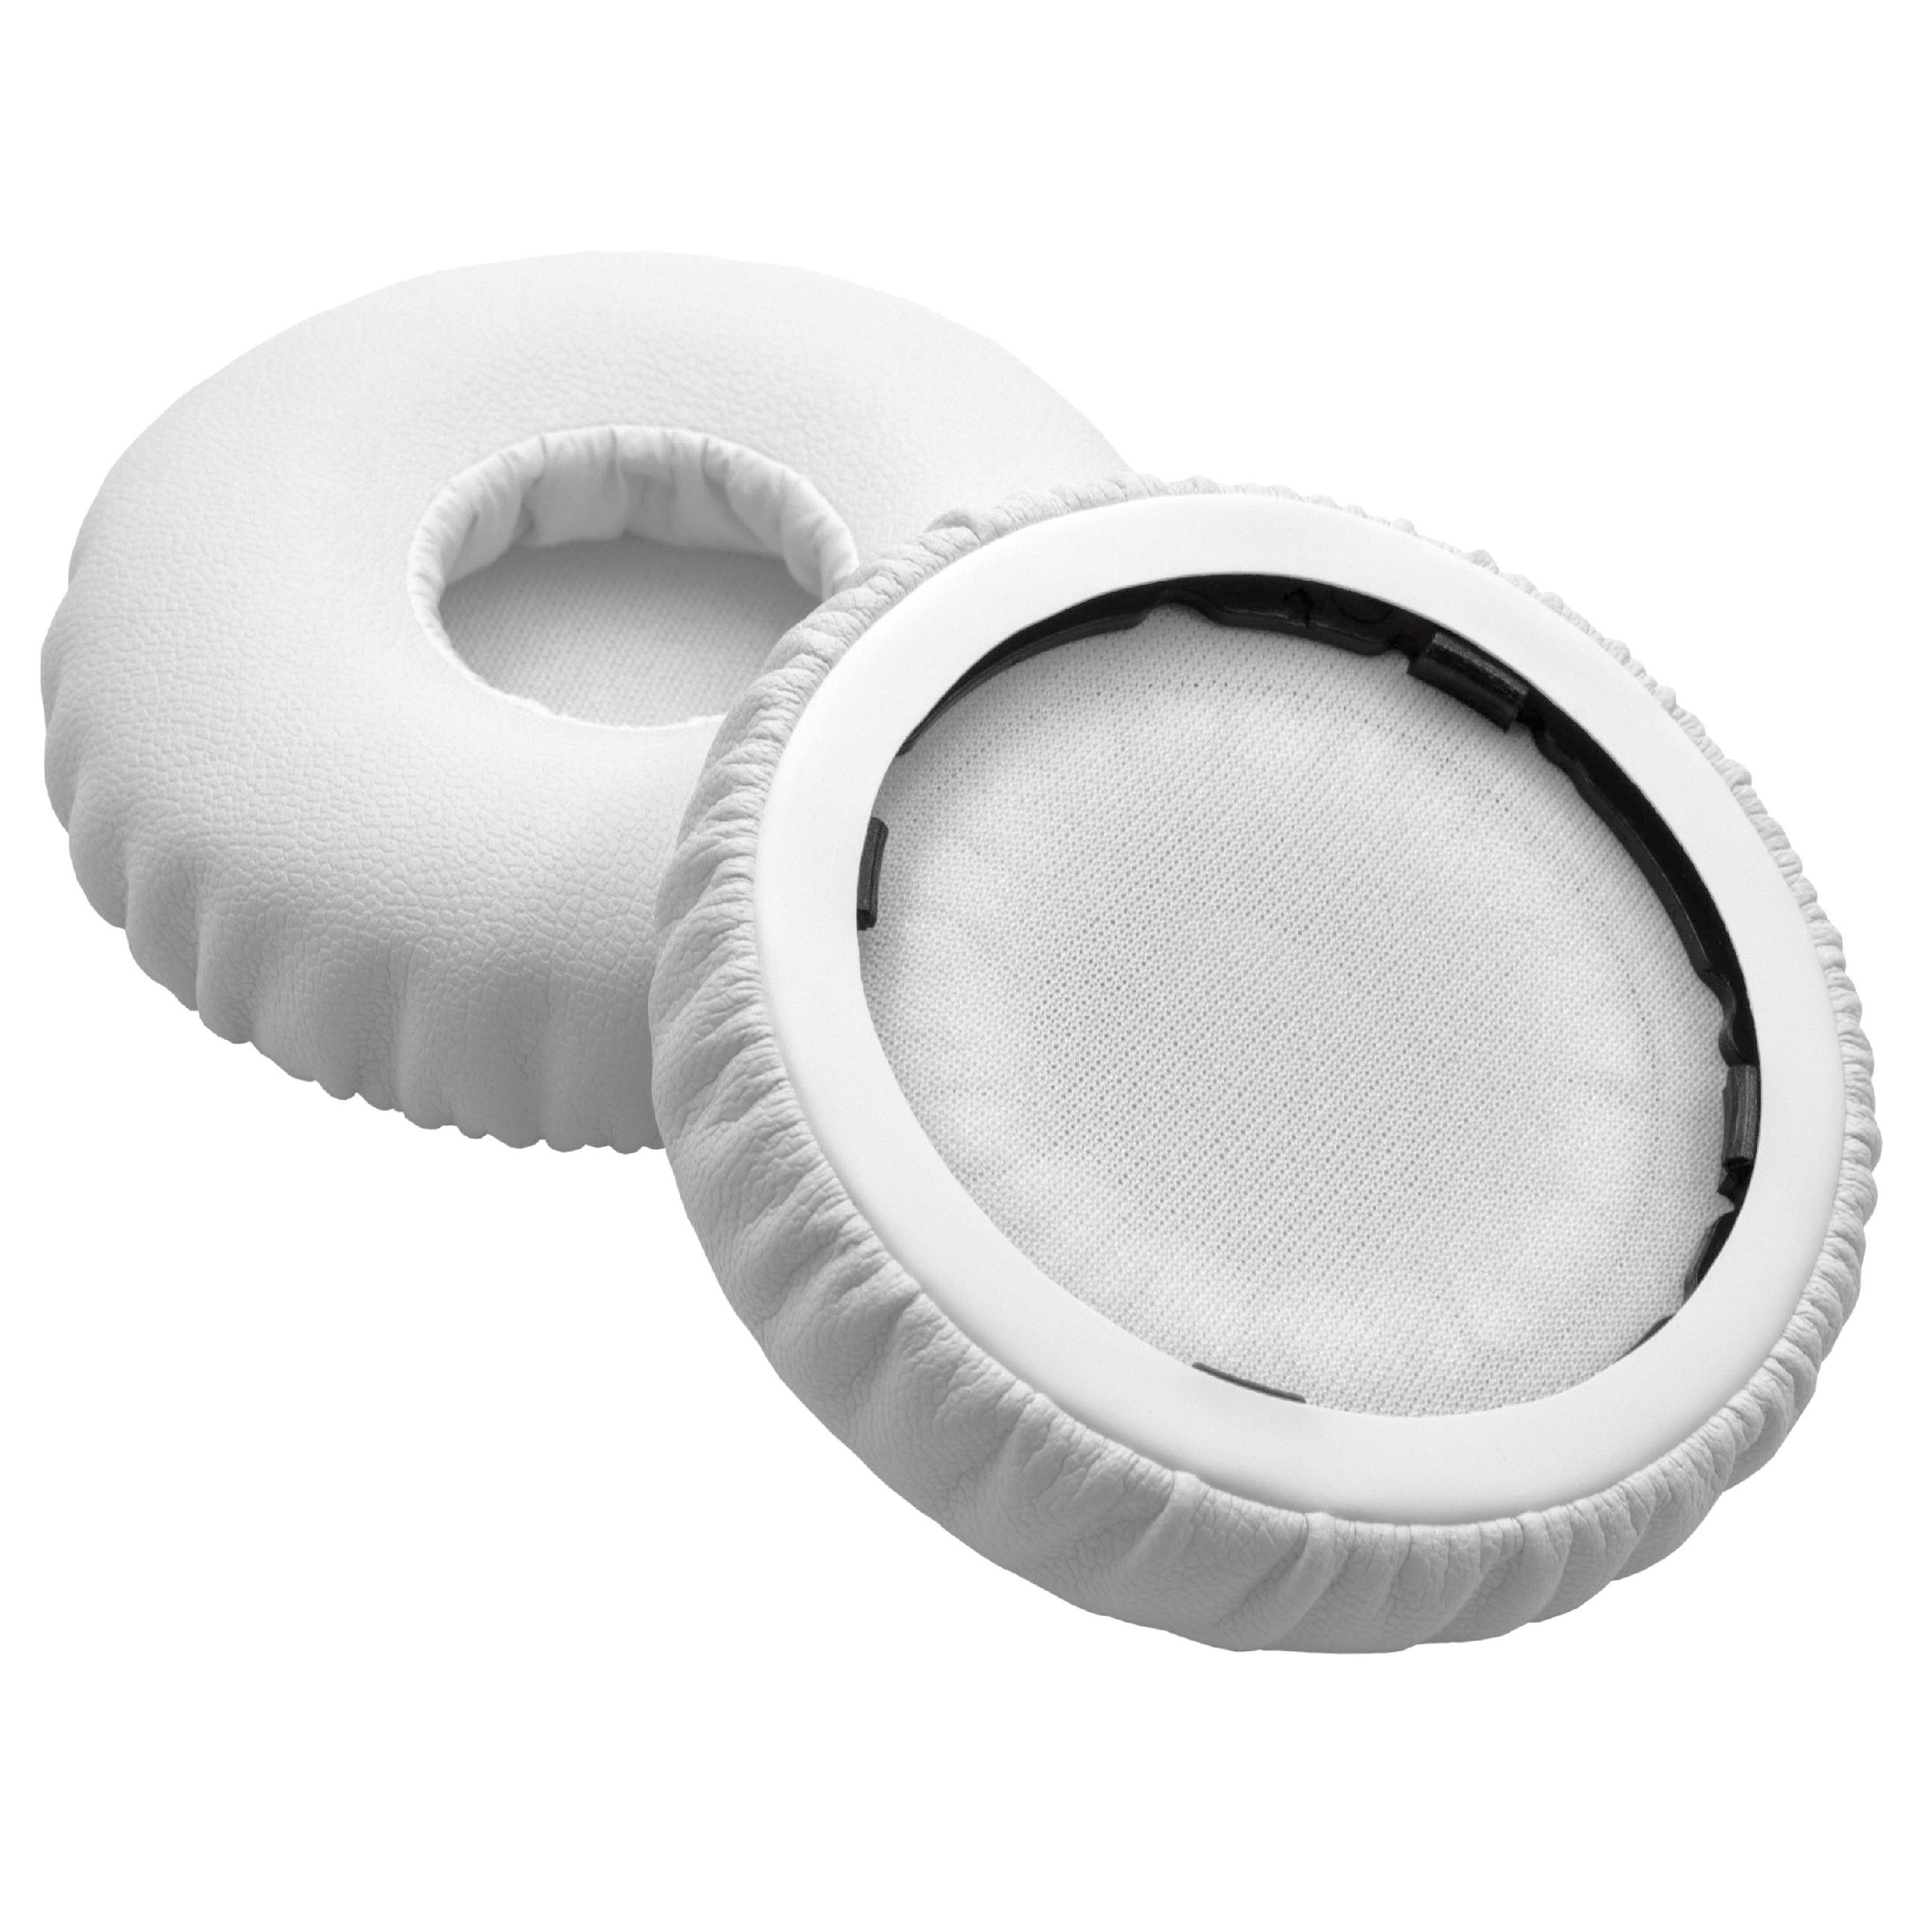 2x Almohadilla para auriculares Beats by Dr. Dre Solo 2, 3 - poliuretano blanco, 6,6cm